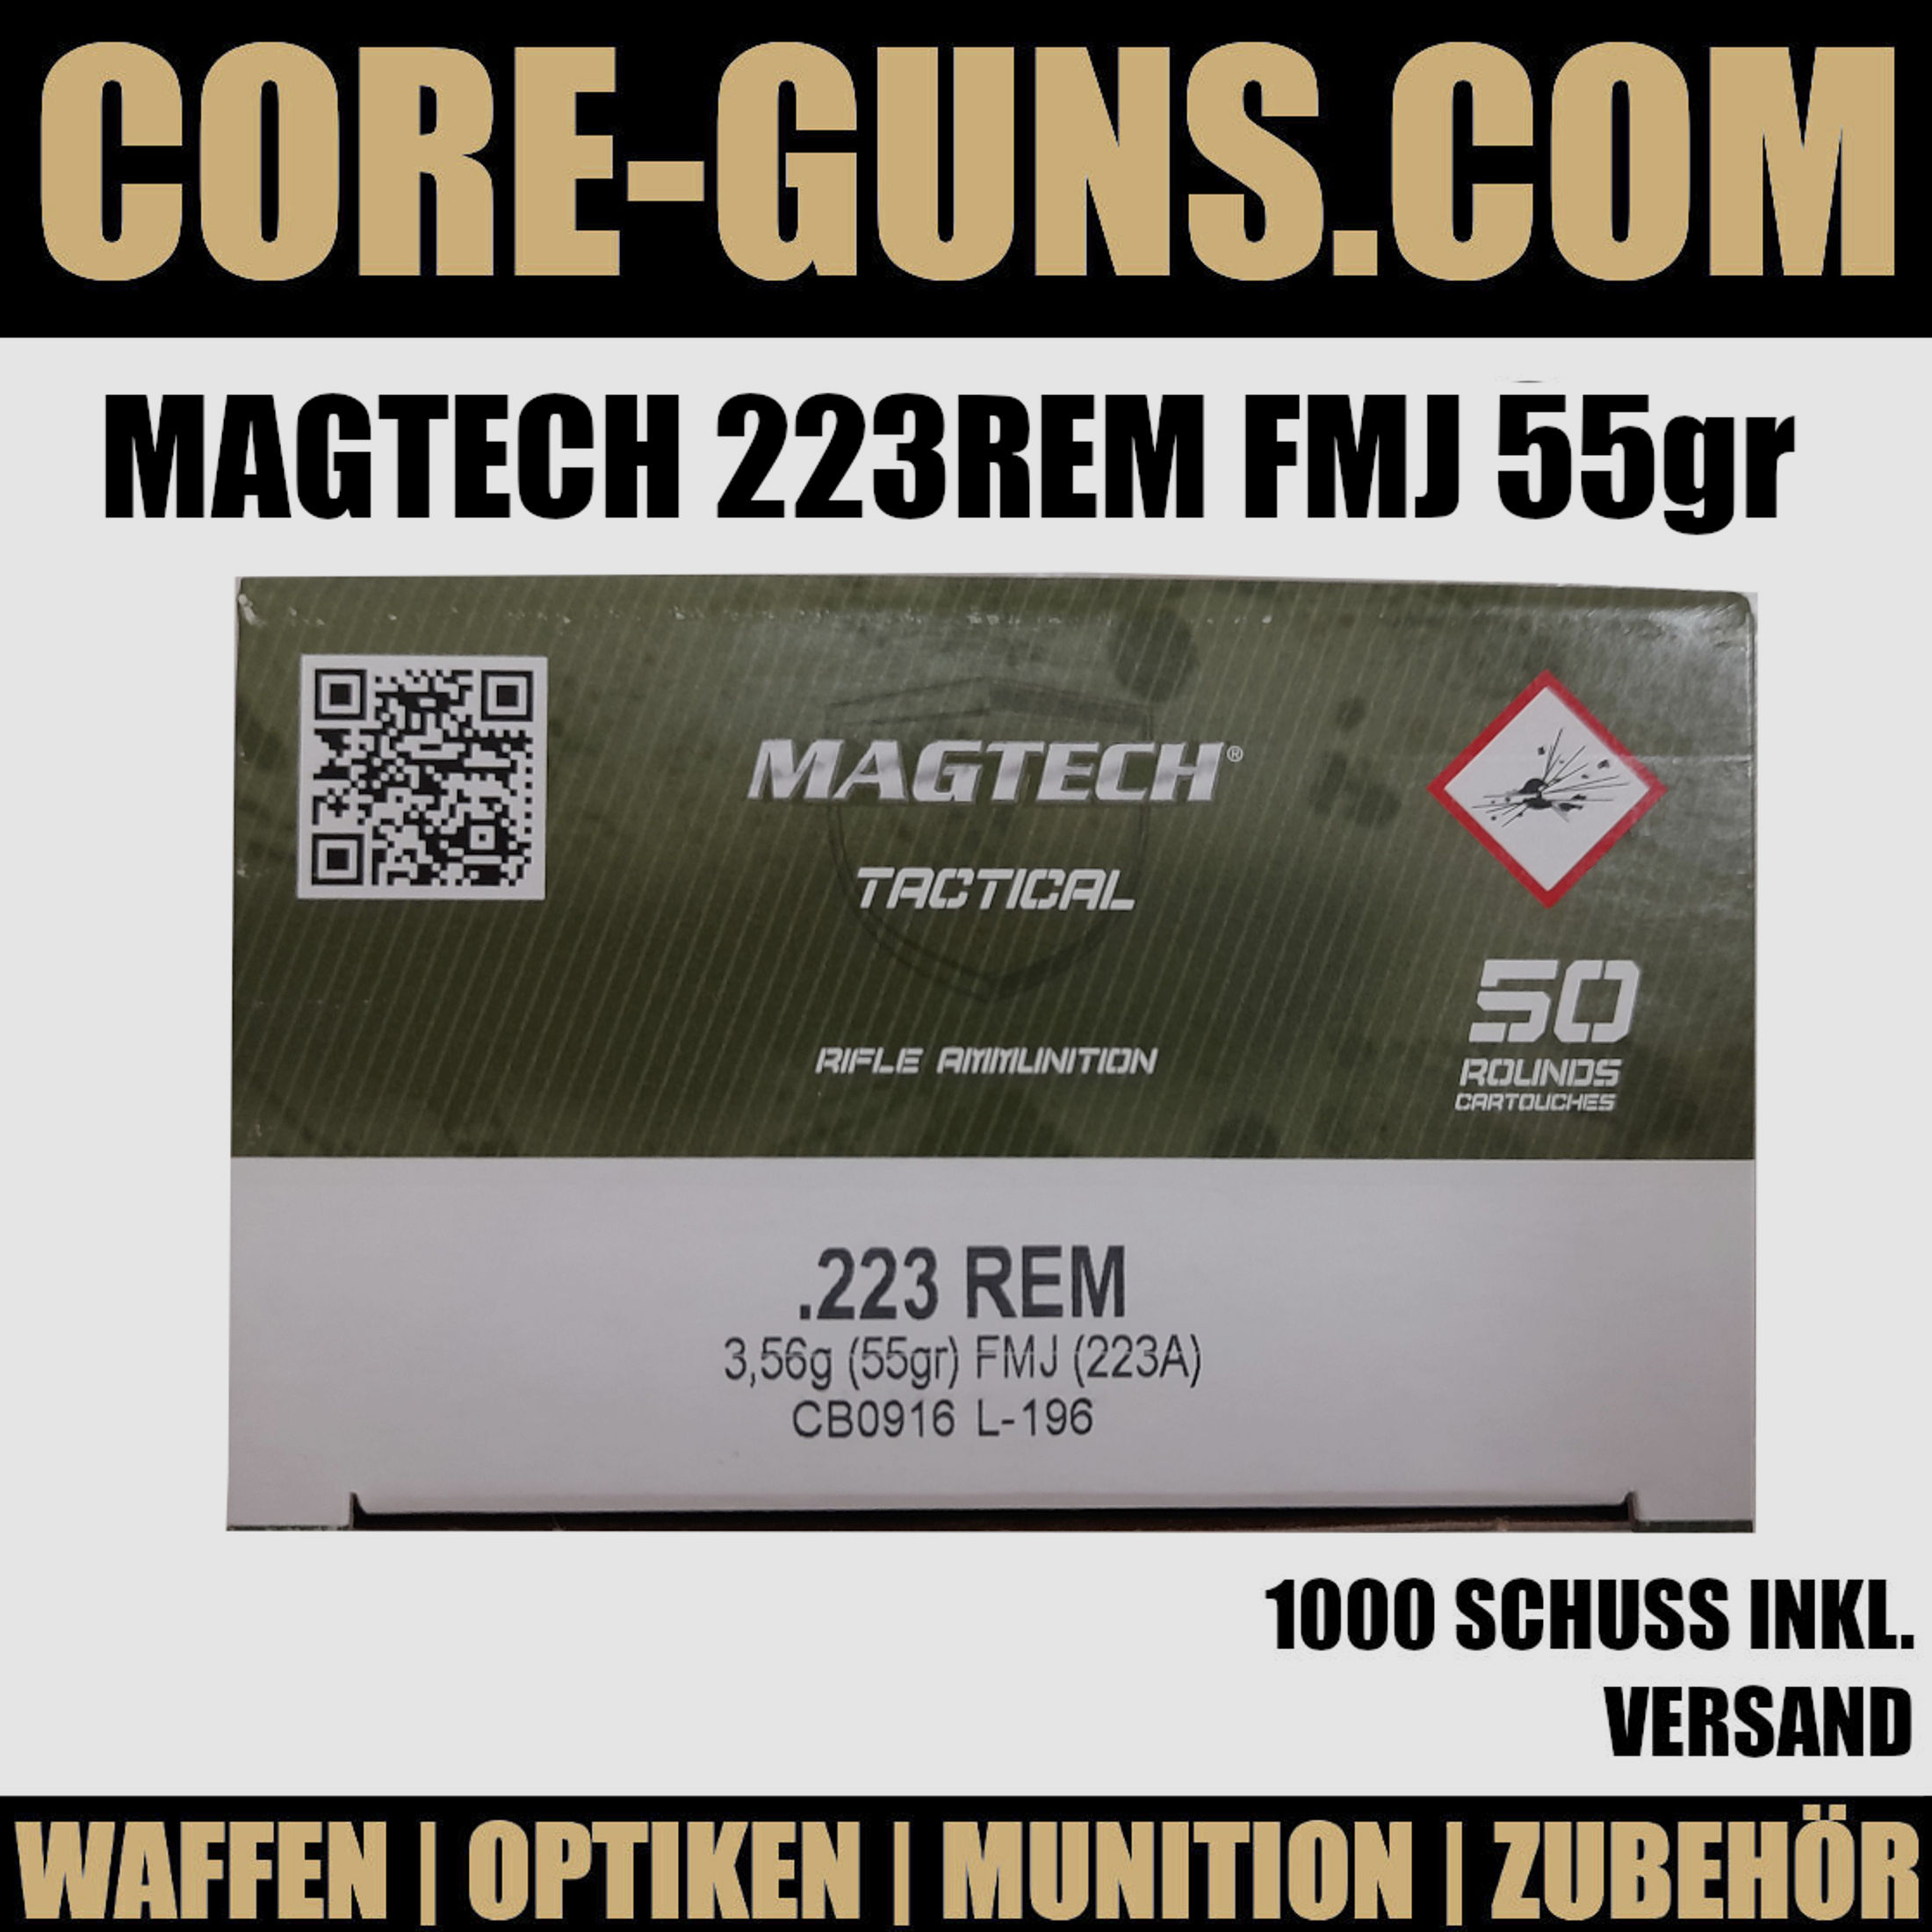 Magtech 223Rem 55gr FMJ - 1000 Schuss inkl. Versand